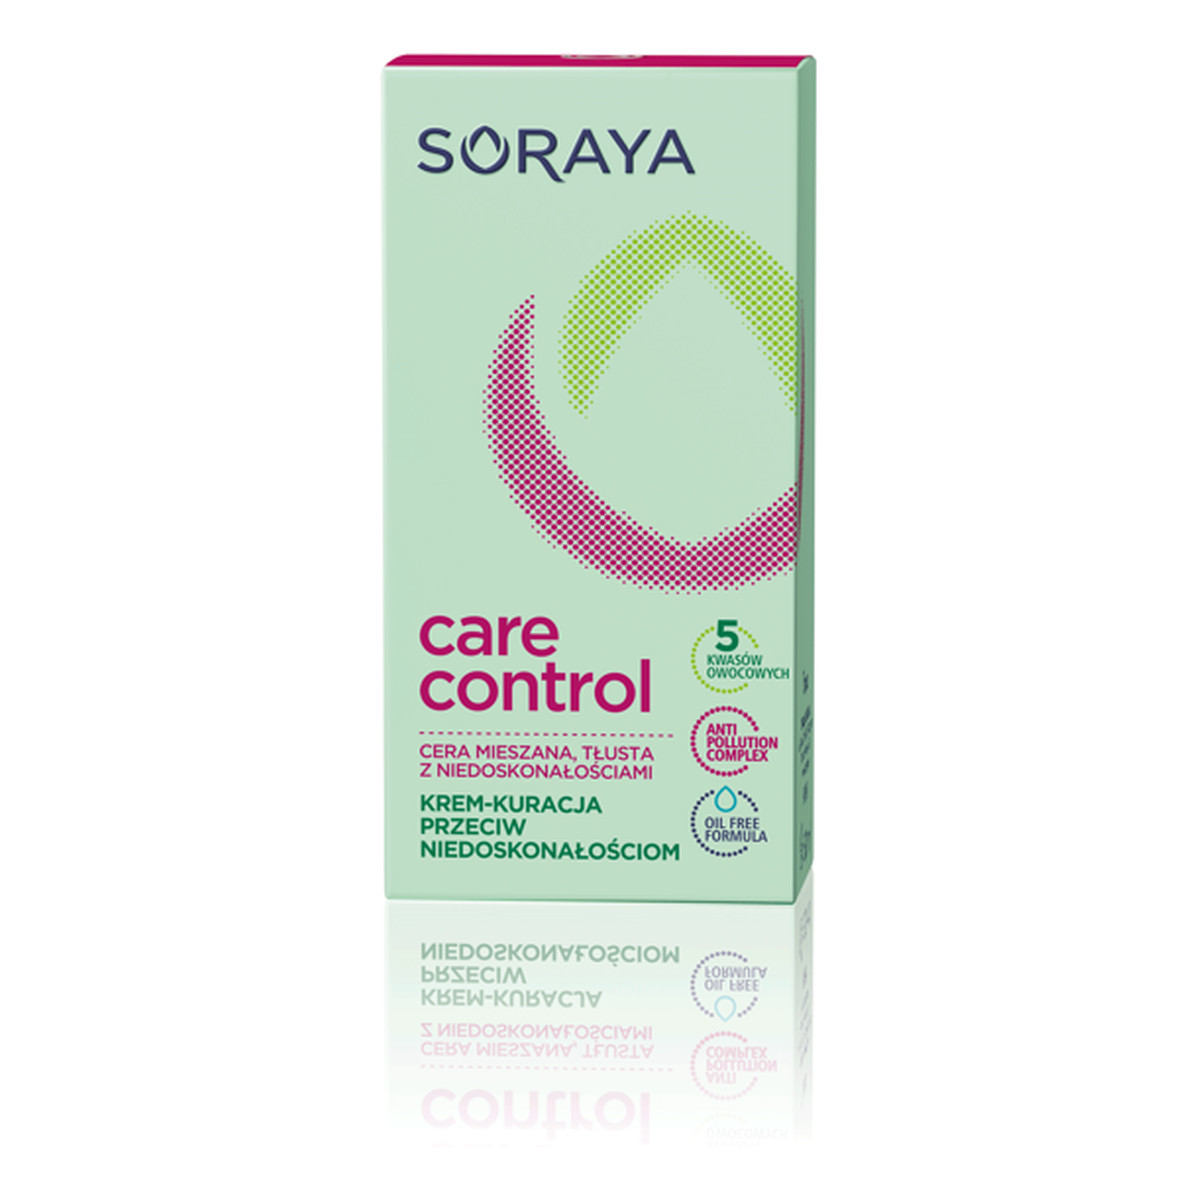 Soraya Care Control Krem-kuracja przeciw niedoskonałościom 50ml